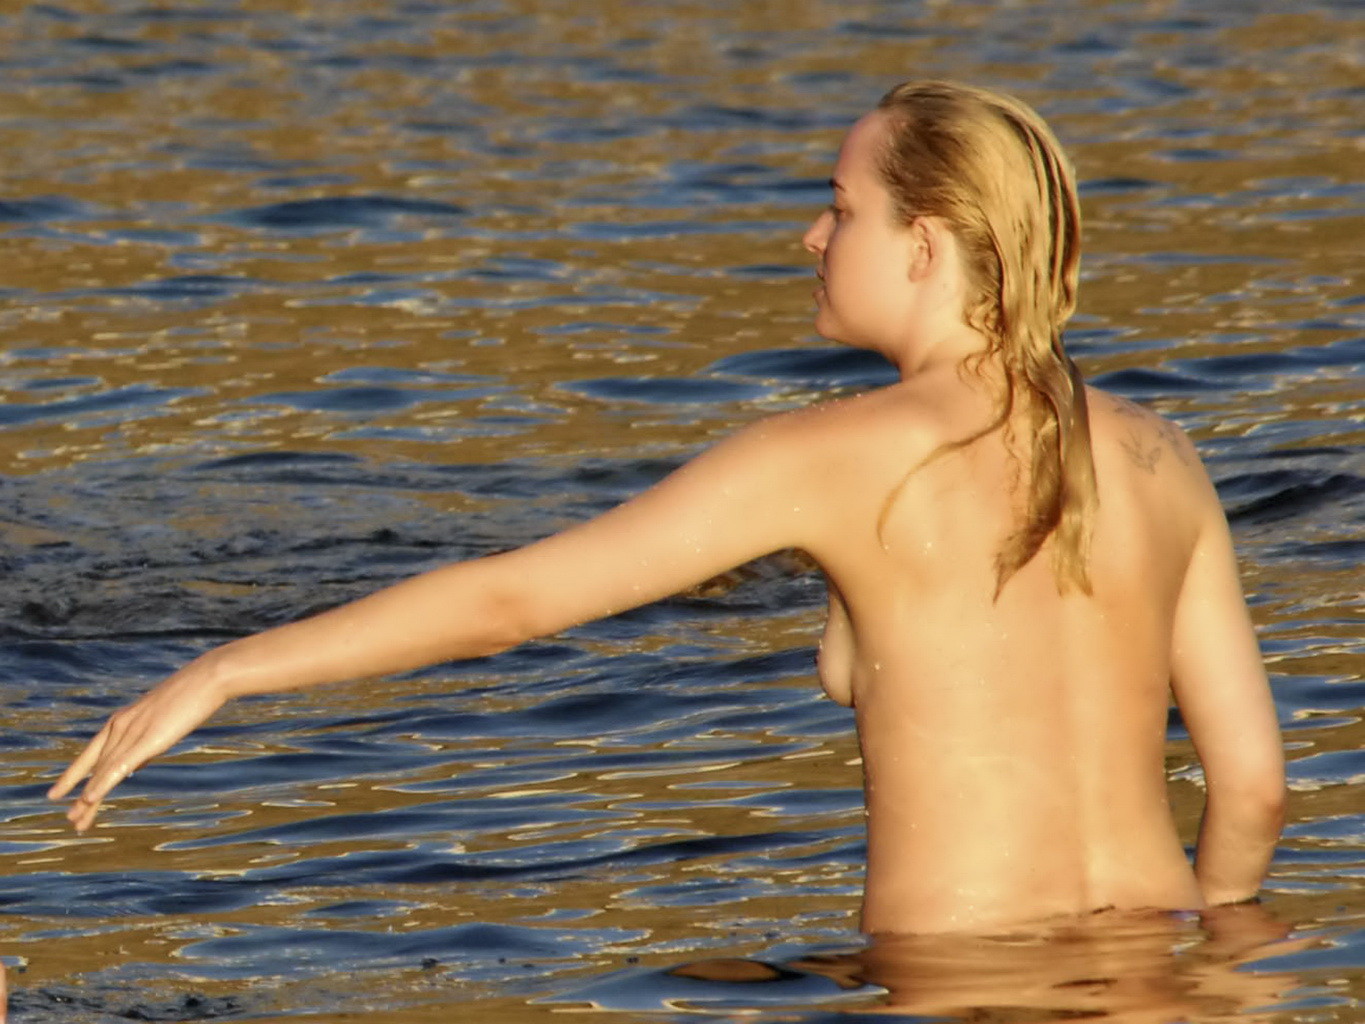 Dakota johnson surprise seins nus à la plage lors de vacances en italie
 #75180823